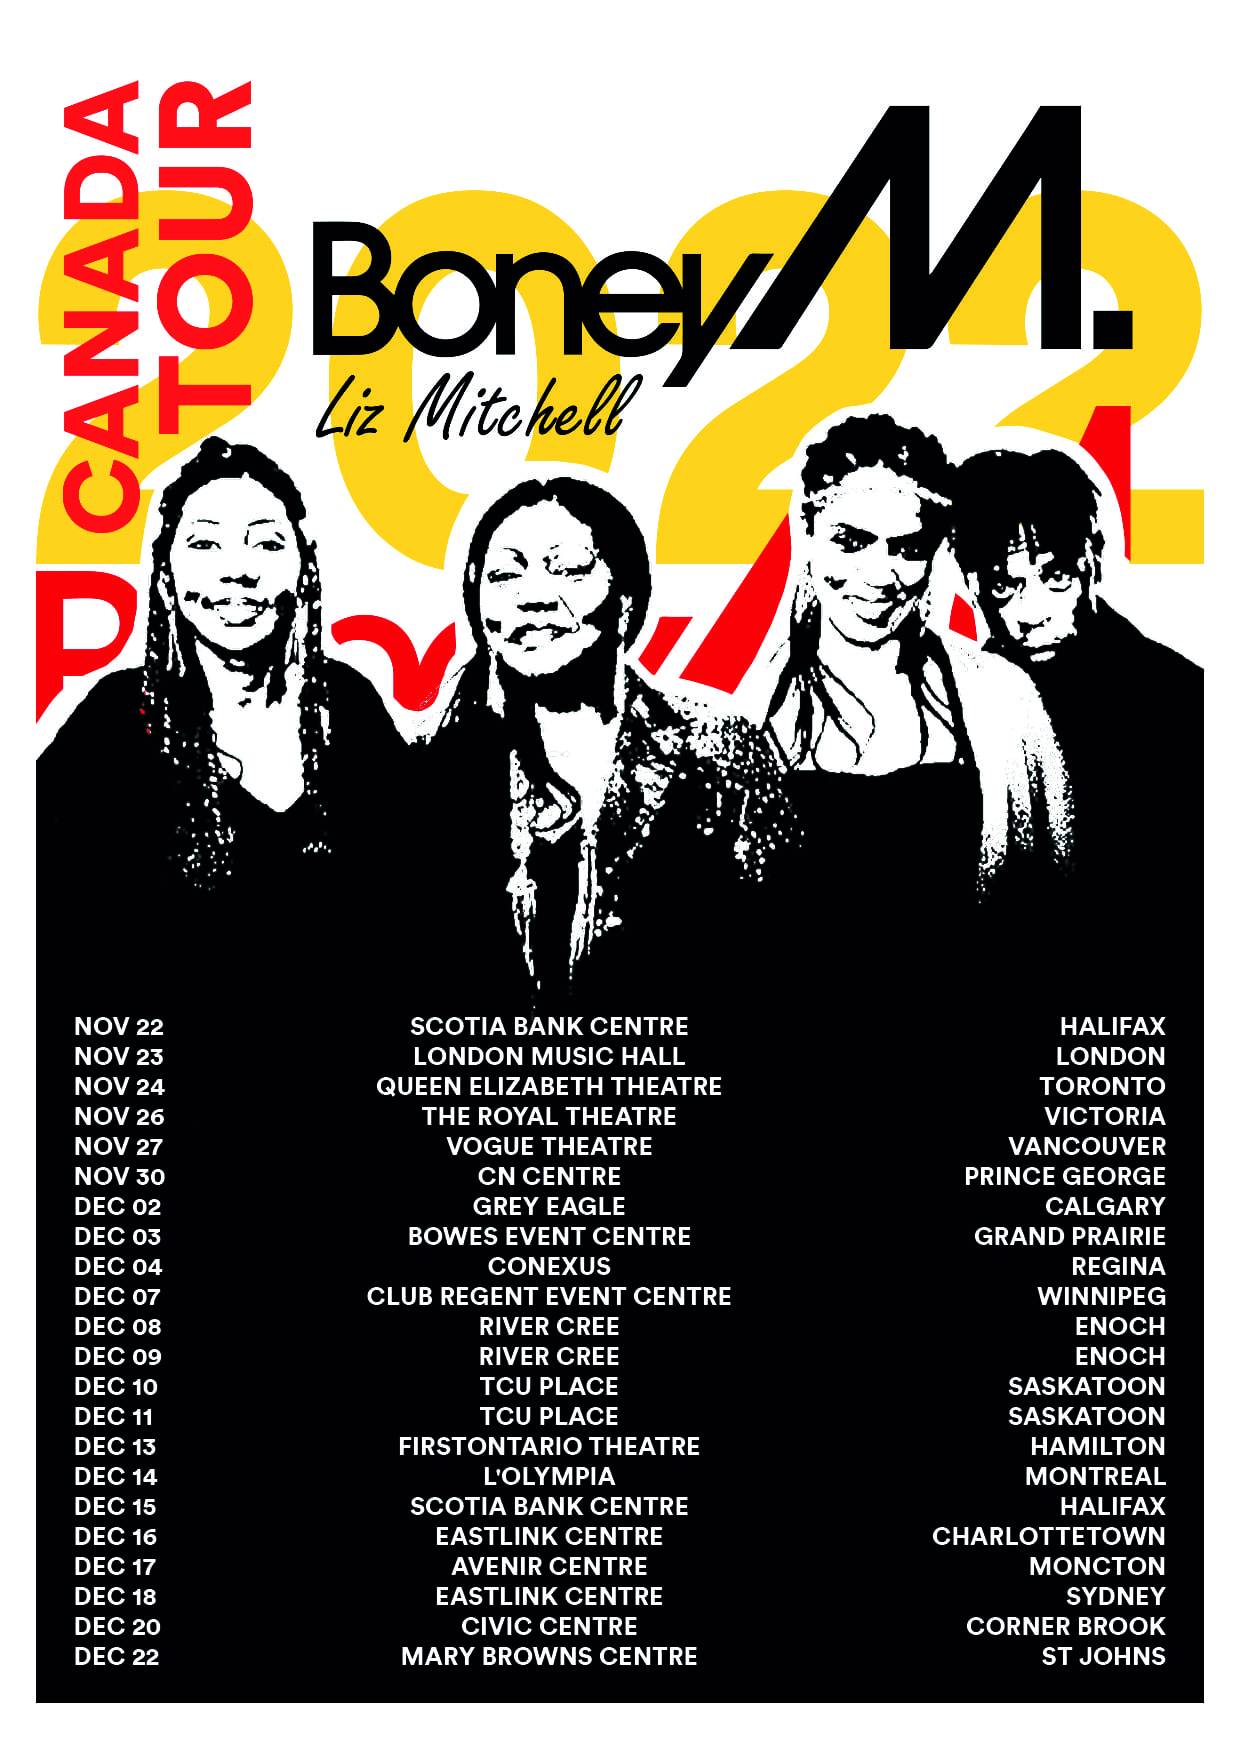 Boney M tour merch